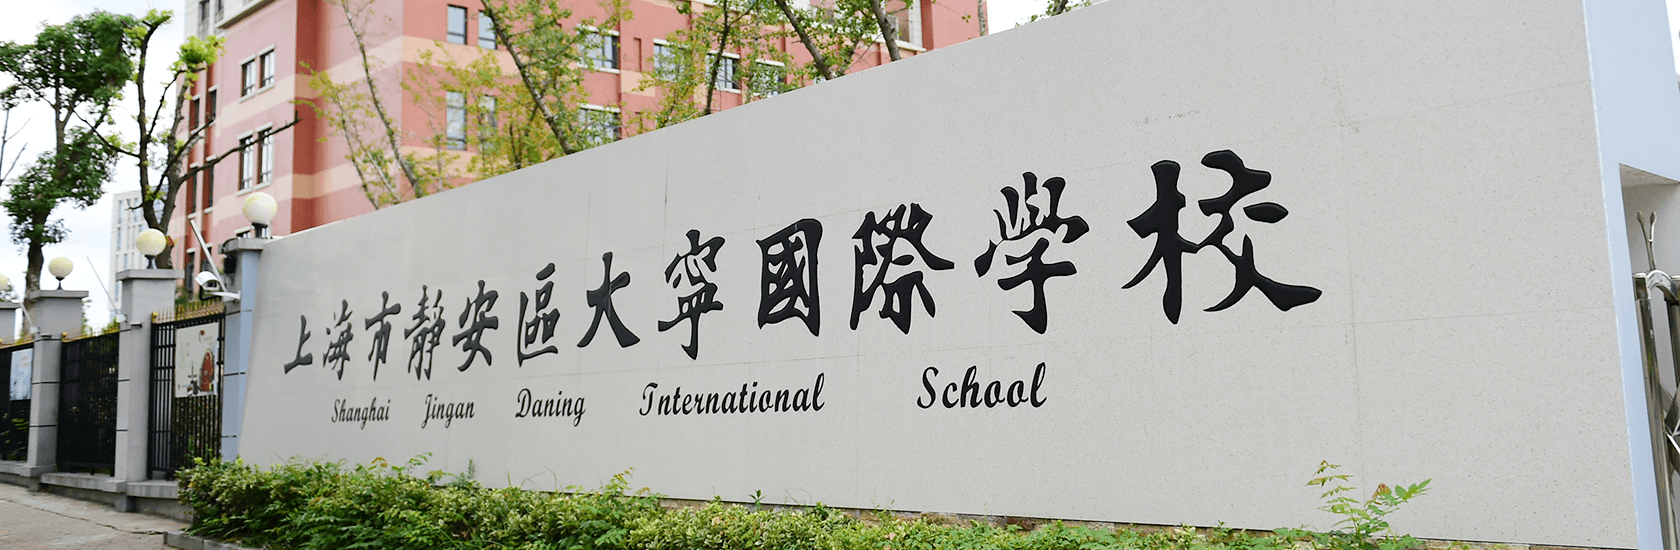 上海市静安区大宁国际学校创设工作坊探索新型家校共育